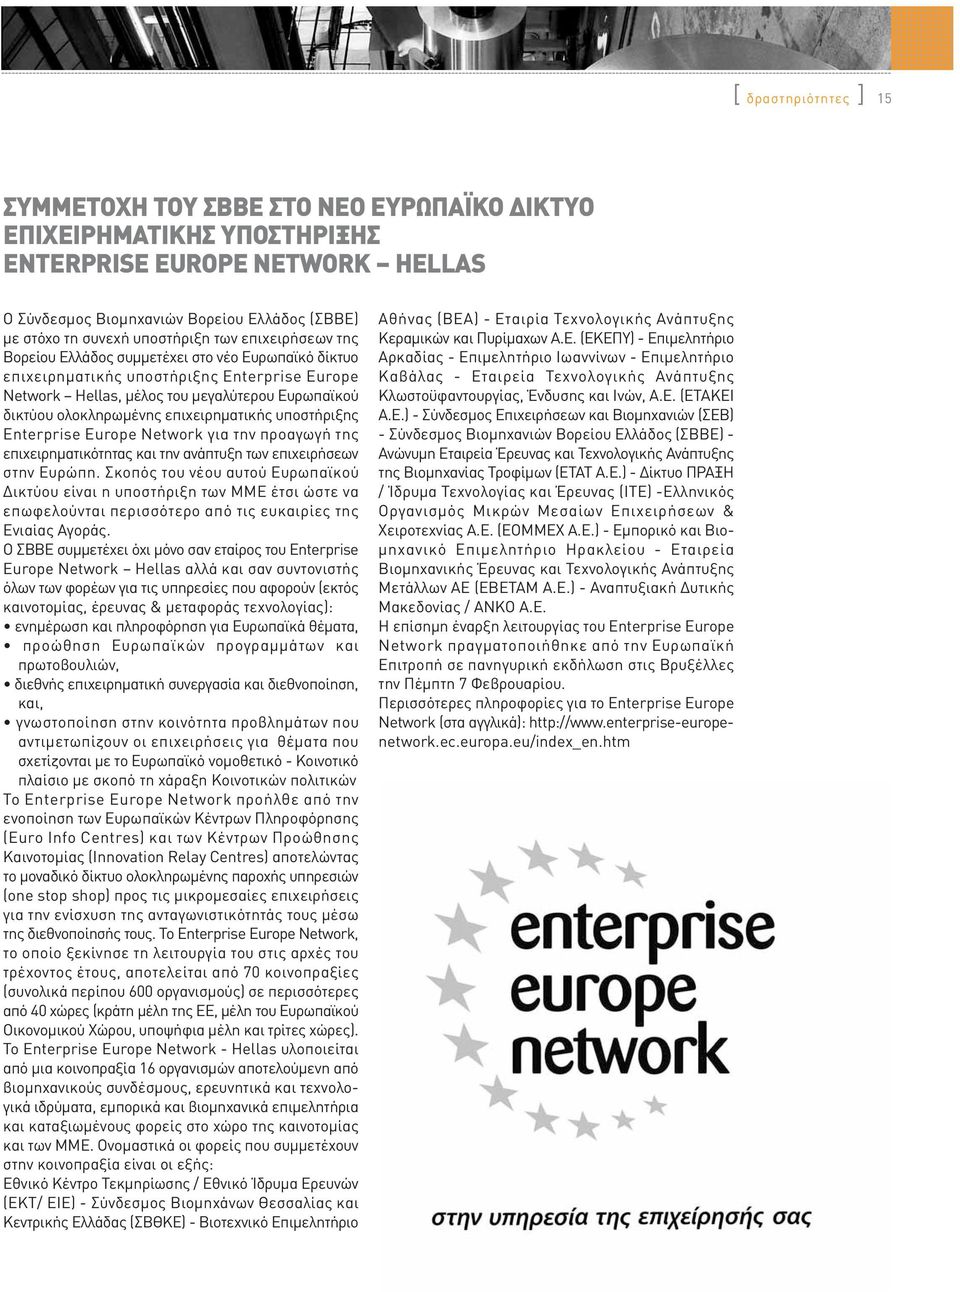 ολοκληρωμένης επιχειρηματικής υποστήριξης Enterprise Europe Network για την προαγωγή της επιχειρηματικότητας και την ανάπτυξη των επιχειρήσεων στην Ευρώπη.